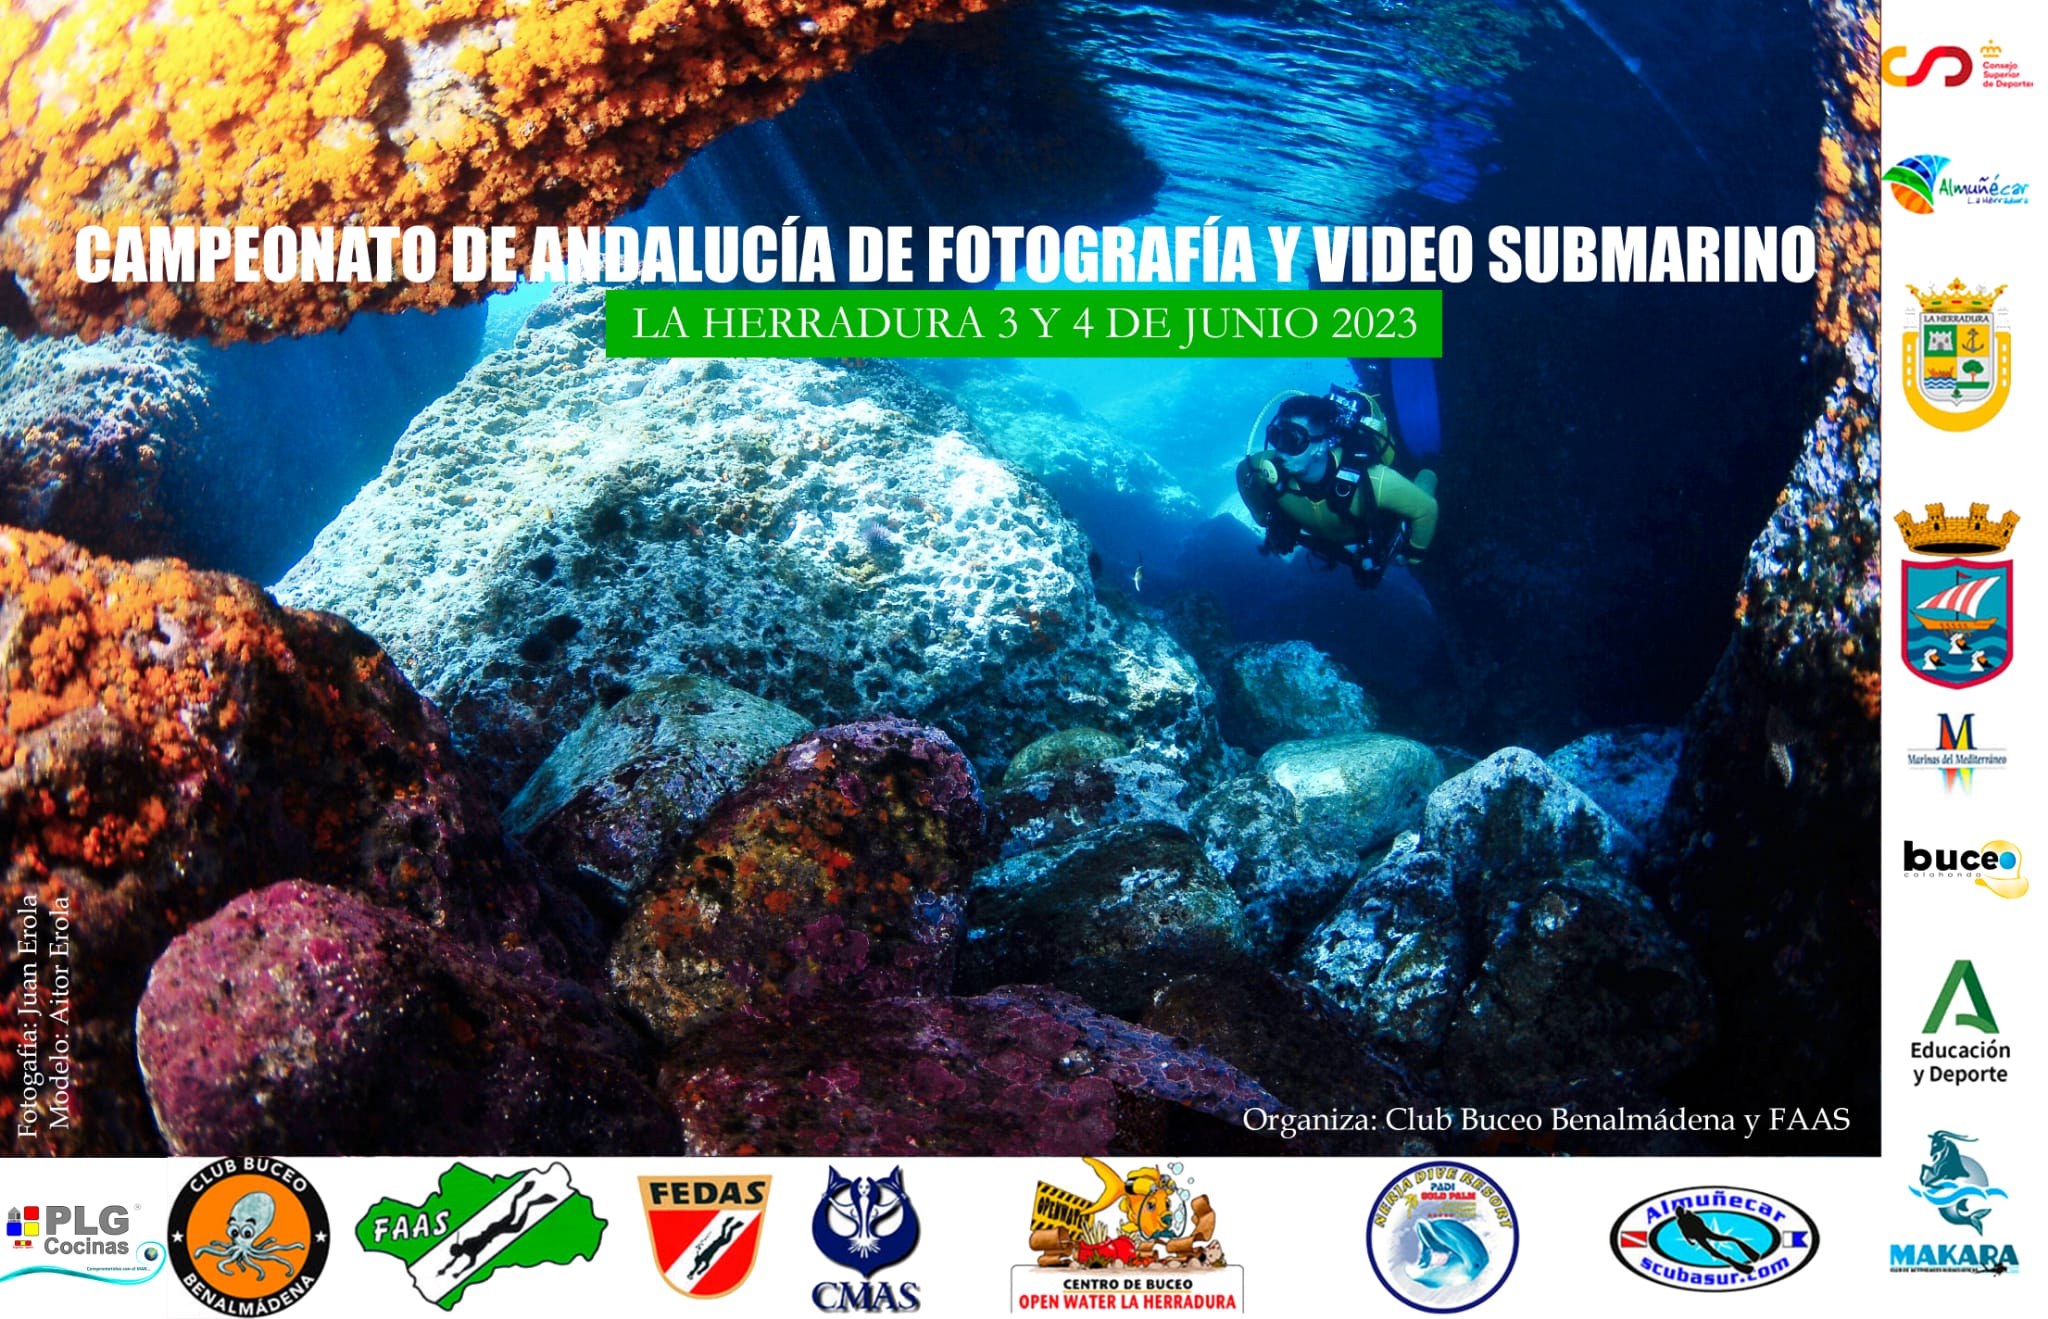 El Campeonato de Andalucía de Fotografía y  Video Submarino se desarrollará en La Herradura del 3 al 4 de junio